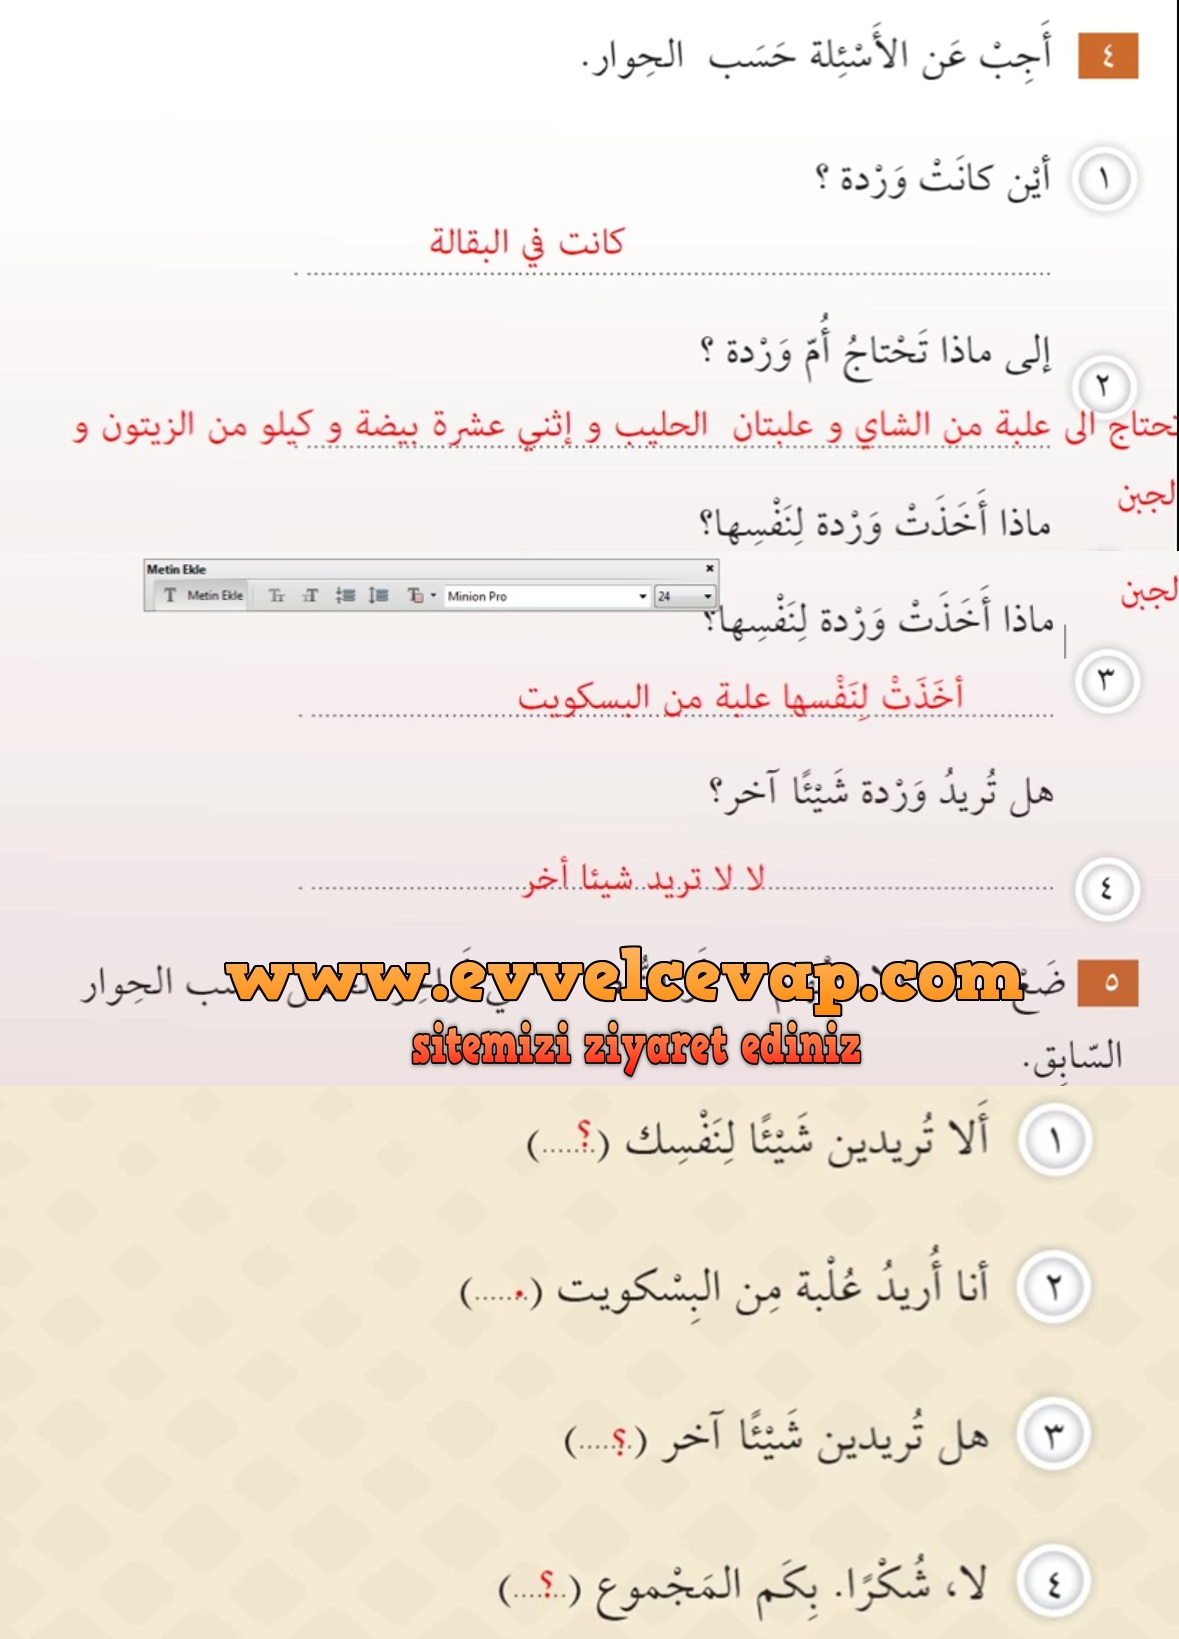 7. Sınıf Meb Yayınları Arapça Ders ve Çalışma Kitabı Sayfa 44 Cevabı